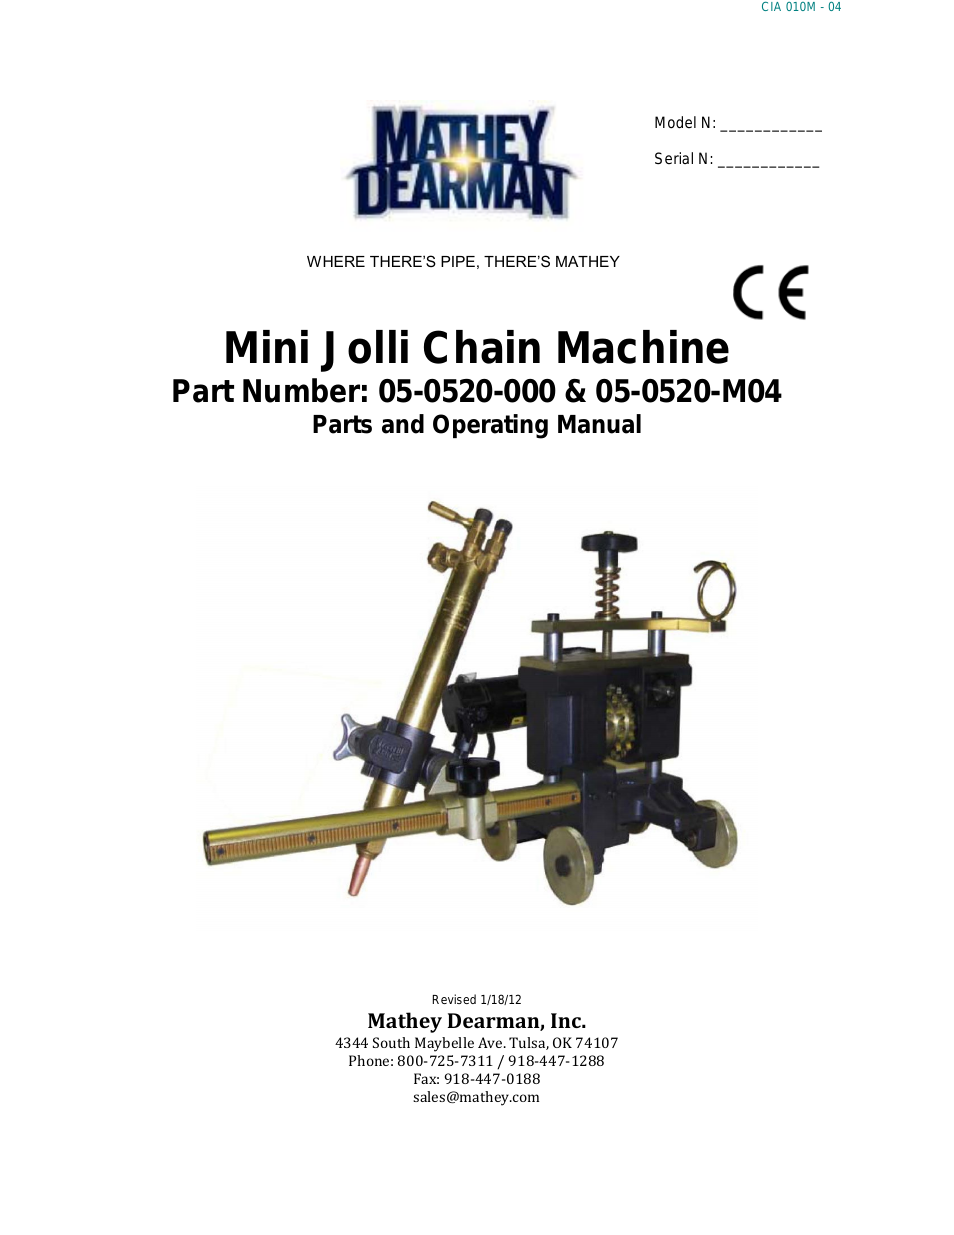 Mini Jolli Chain Machine